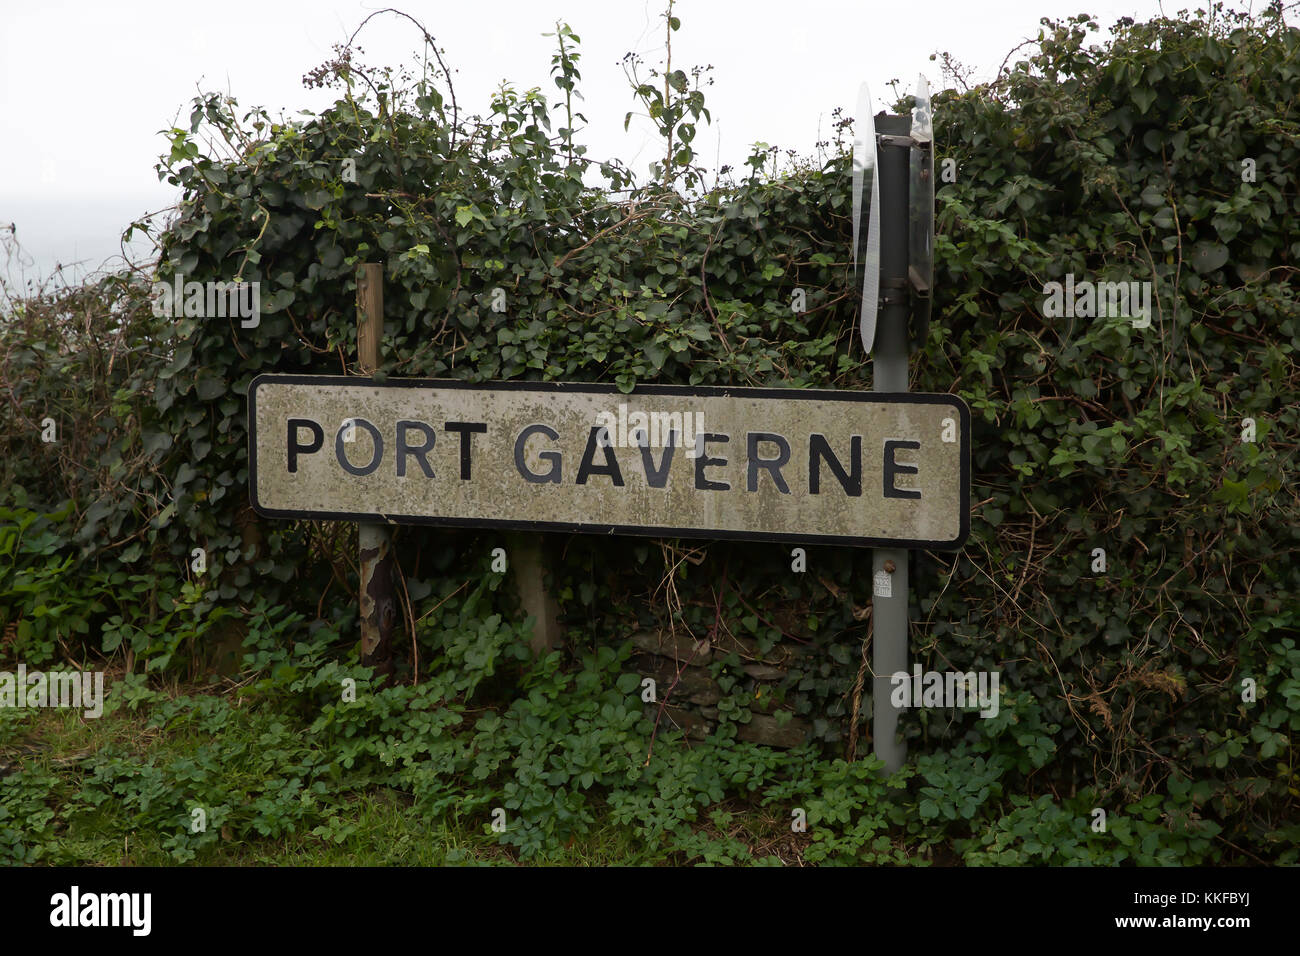 Port Gaverne road sign Stock Photo